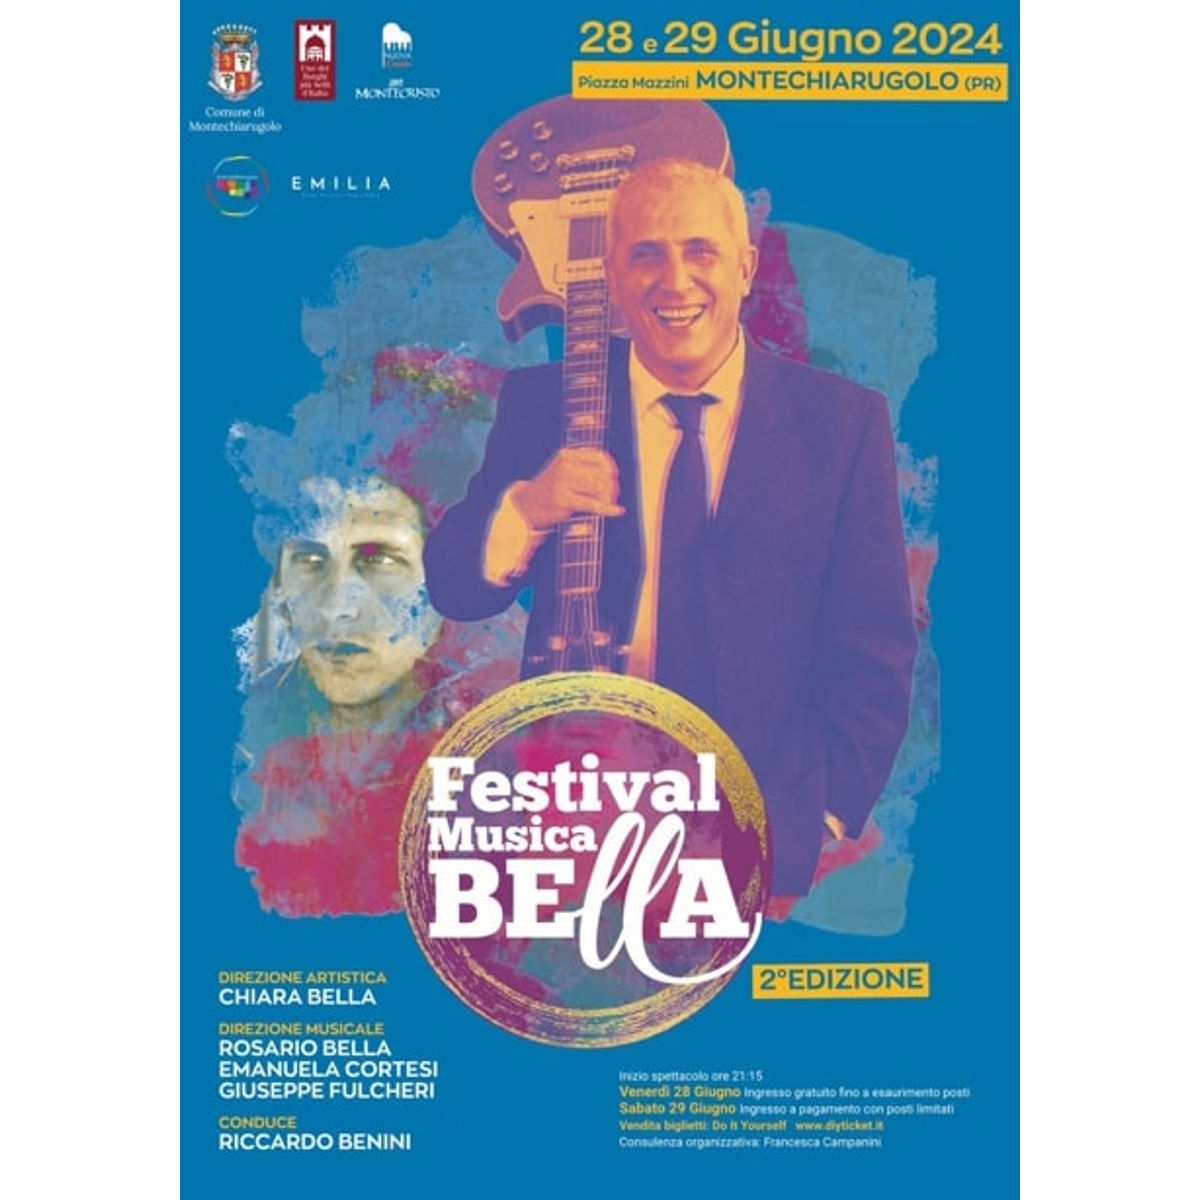 Festival Musica Bella: il 28 e il 29 giugno, in Piazza Mazzini, a Montechiarugolo (Parma), si terrà la 2ª edizione del festival dedicato al grande compositore e cantautore Gianni Bella